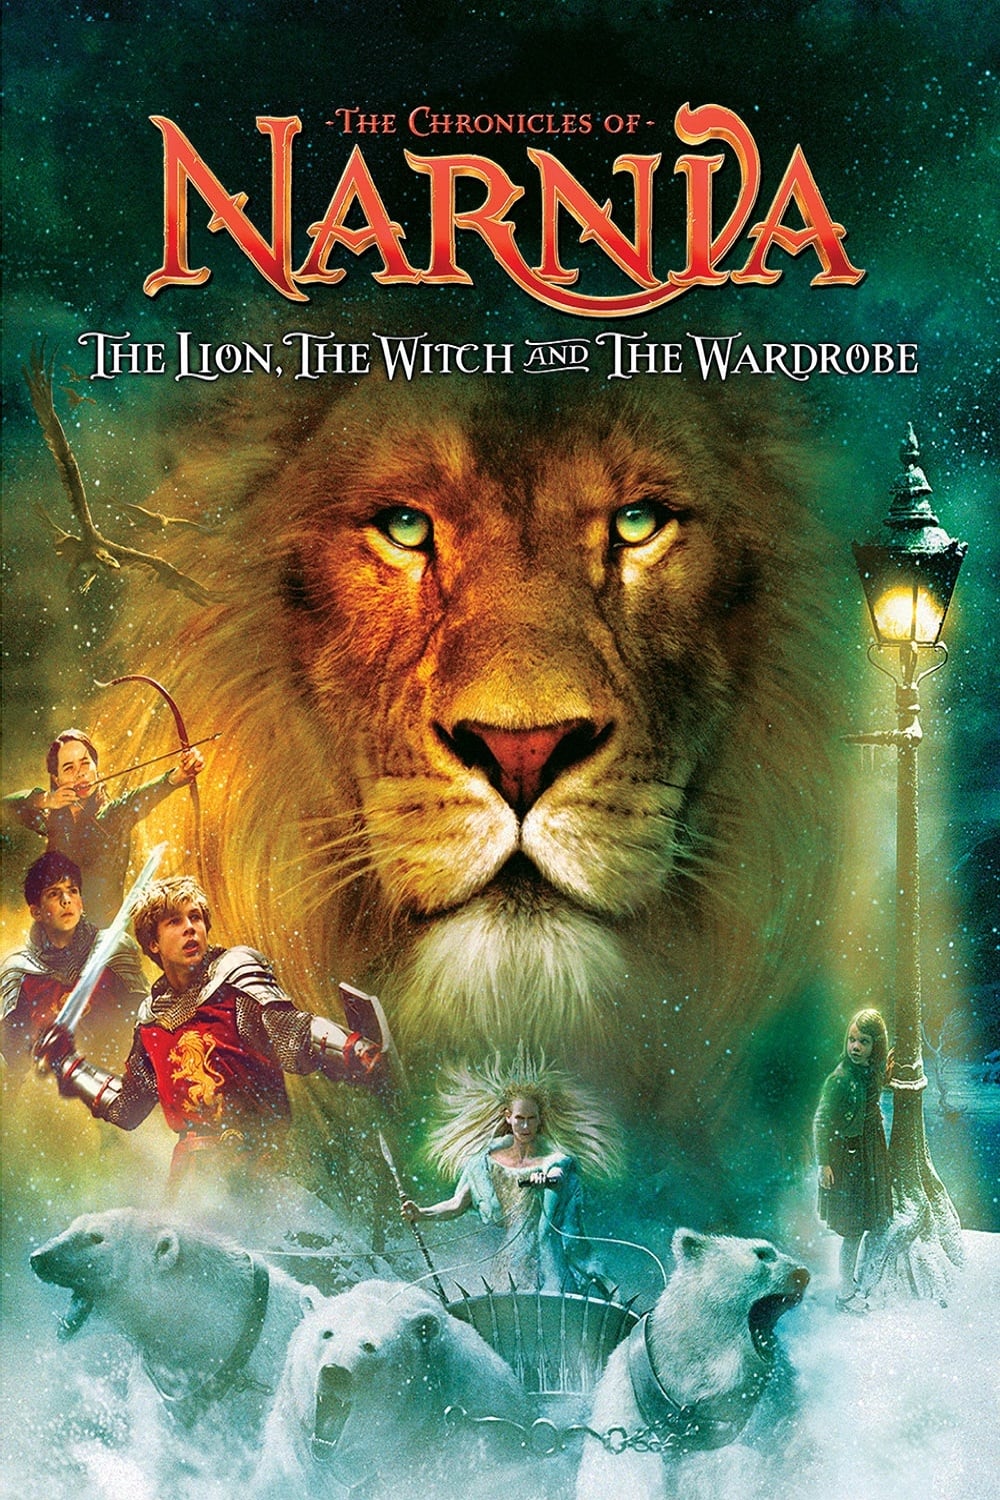 Le Monde de Narnia : Le Lion, la sorcière blanche et l'armoire magique (2005)